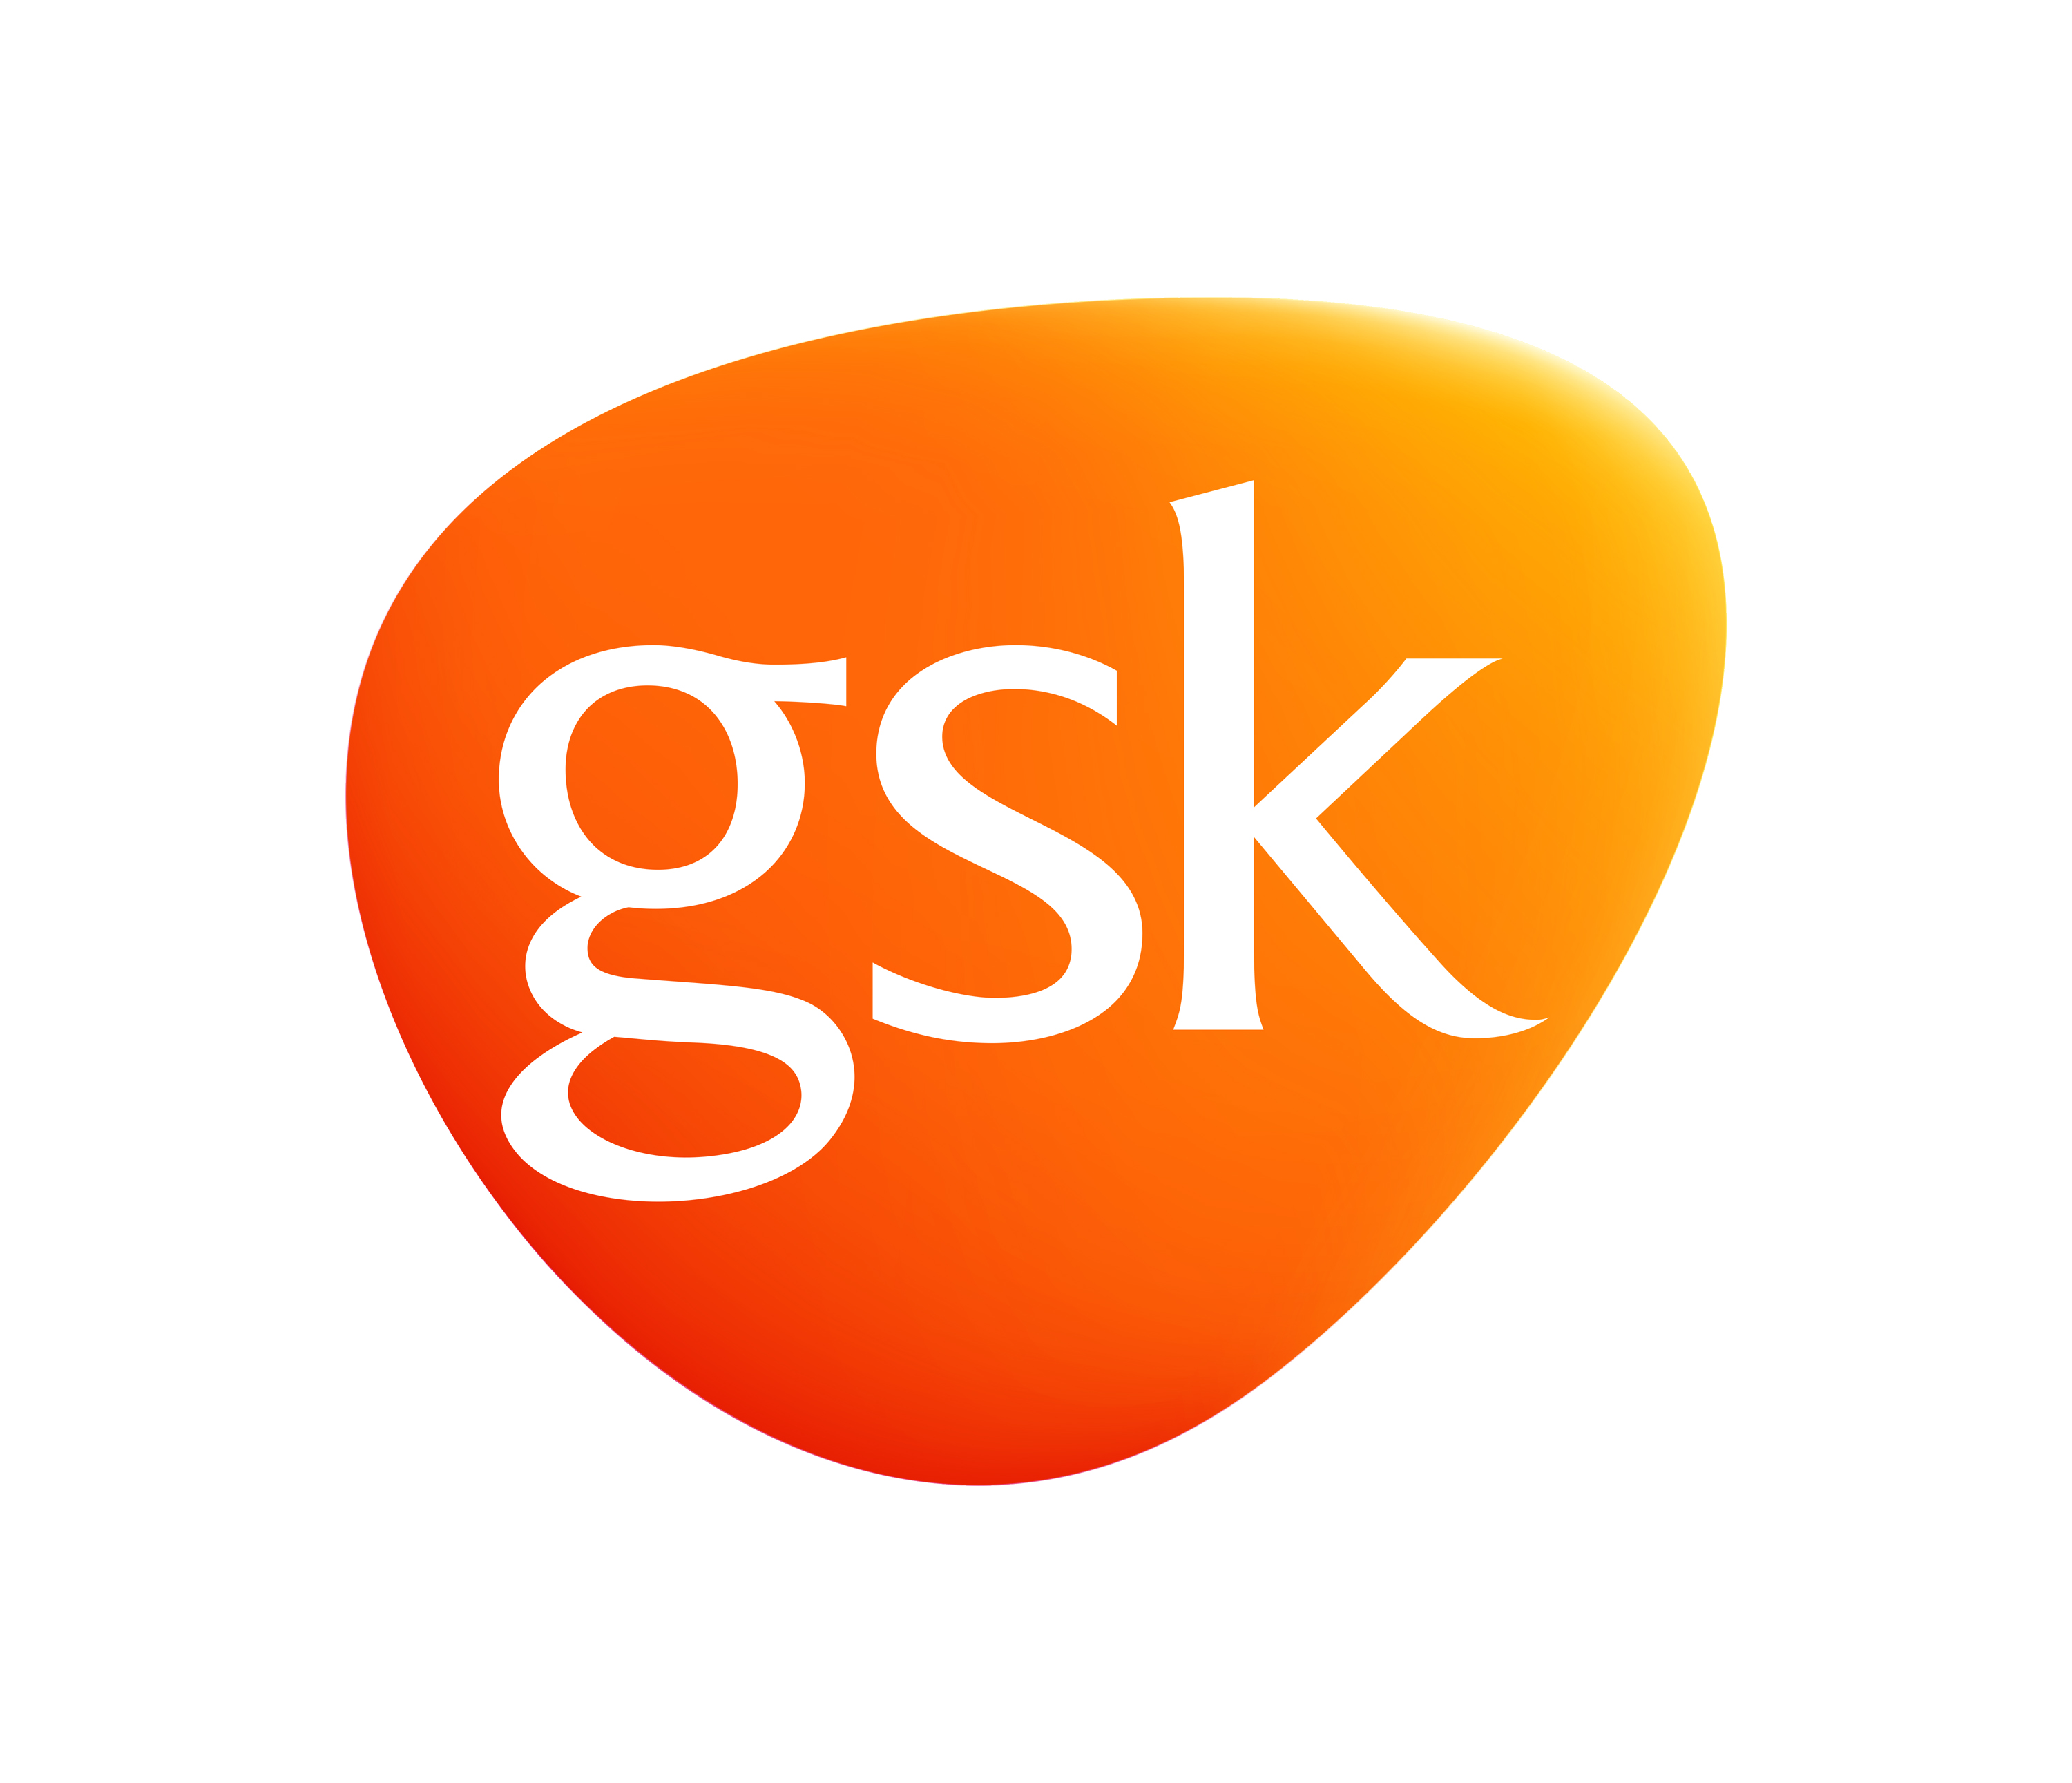 Glaxo Smith Kline logo